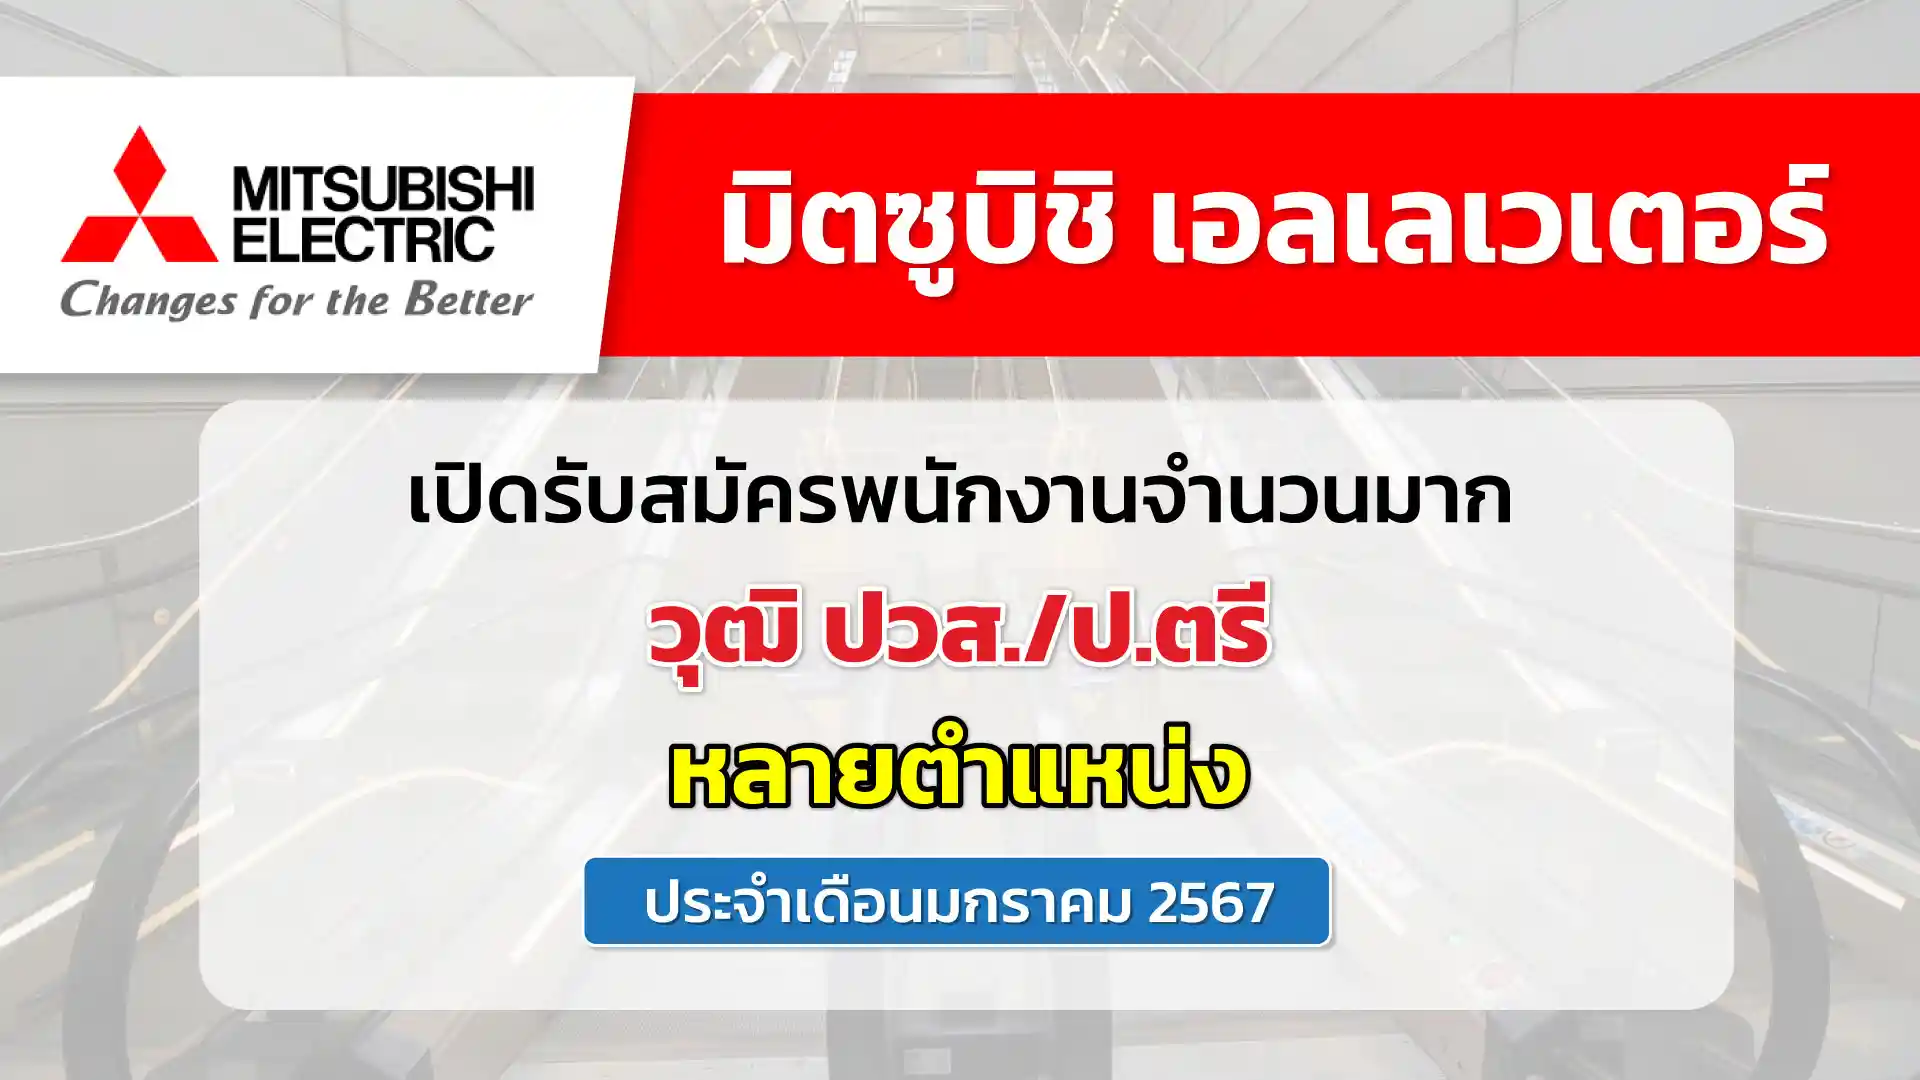 มิตซูบิชิ เอลเลเวเตอร์ (ประเทศไทย) เปิดรับสมัครพนักงานจำนวนมาก